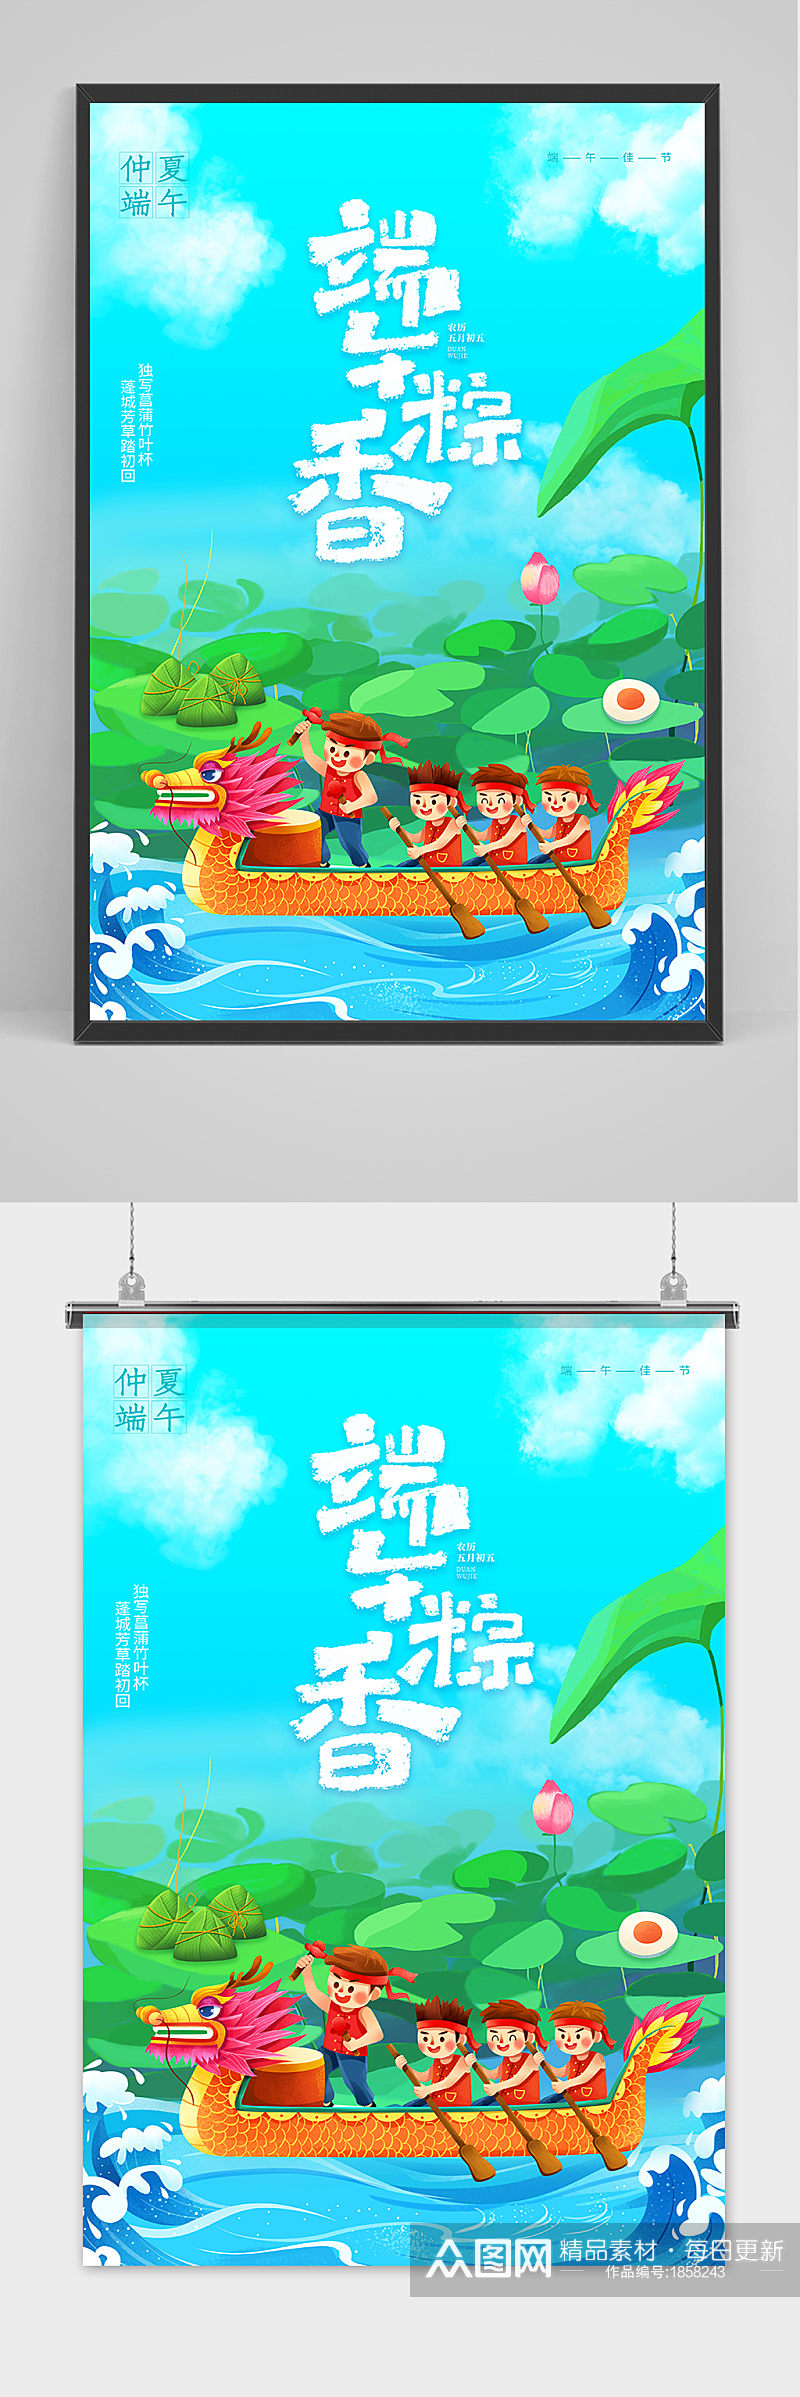 小清新创意端午节中国风海报素材